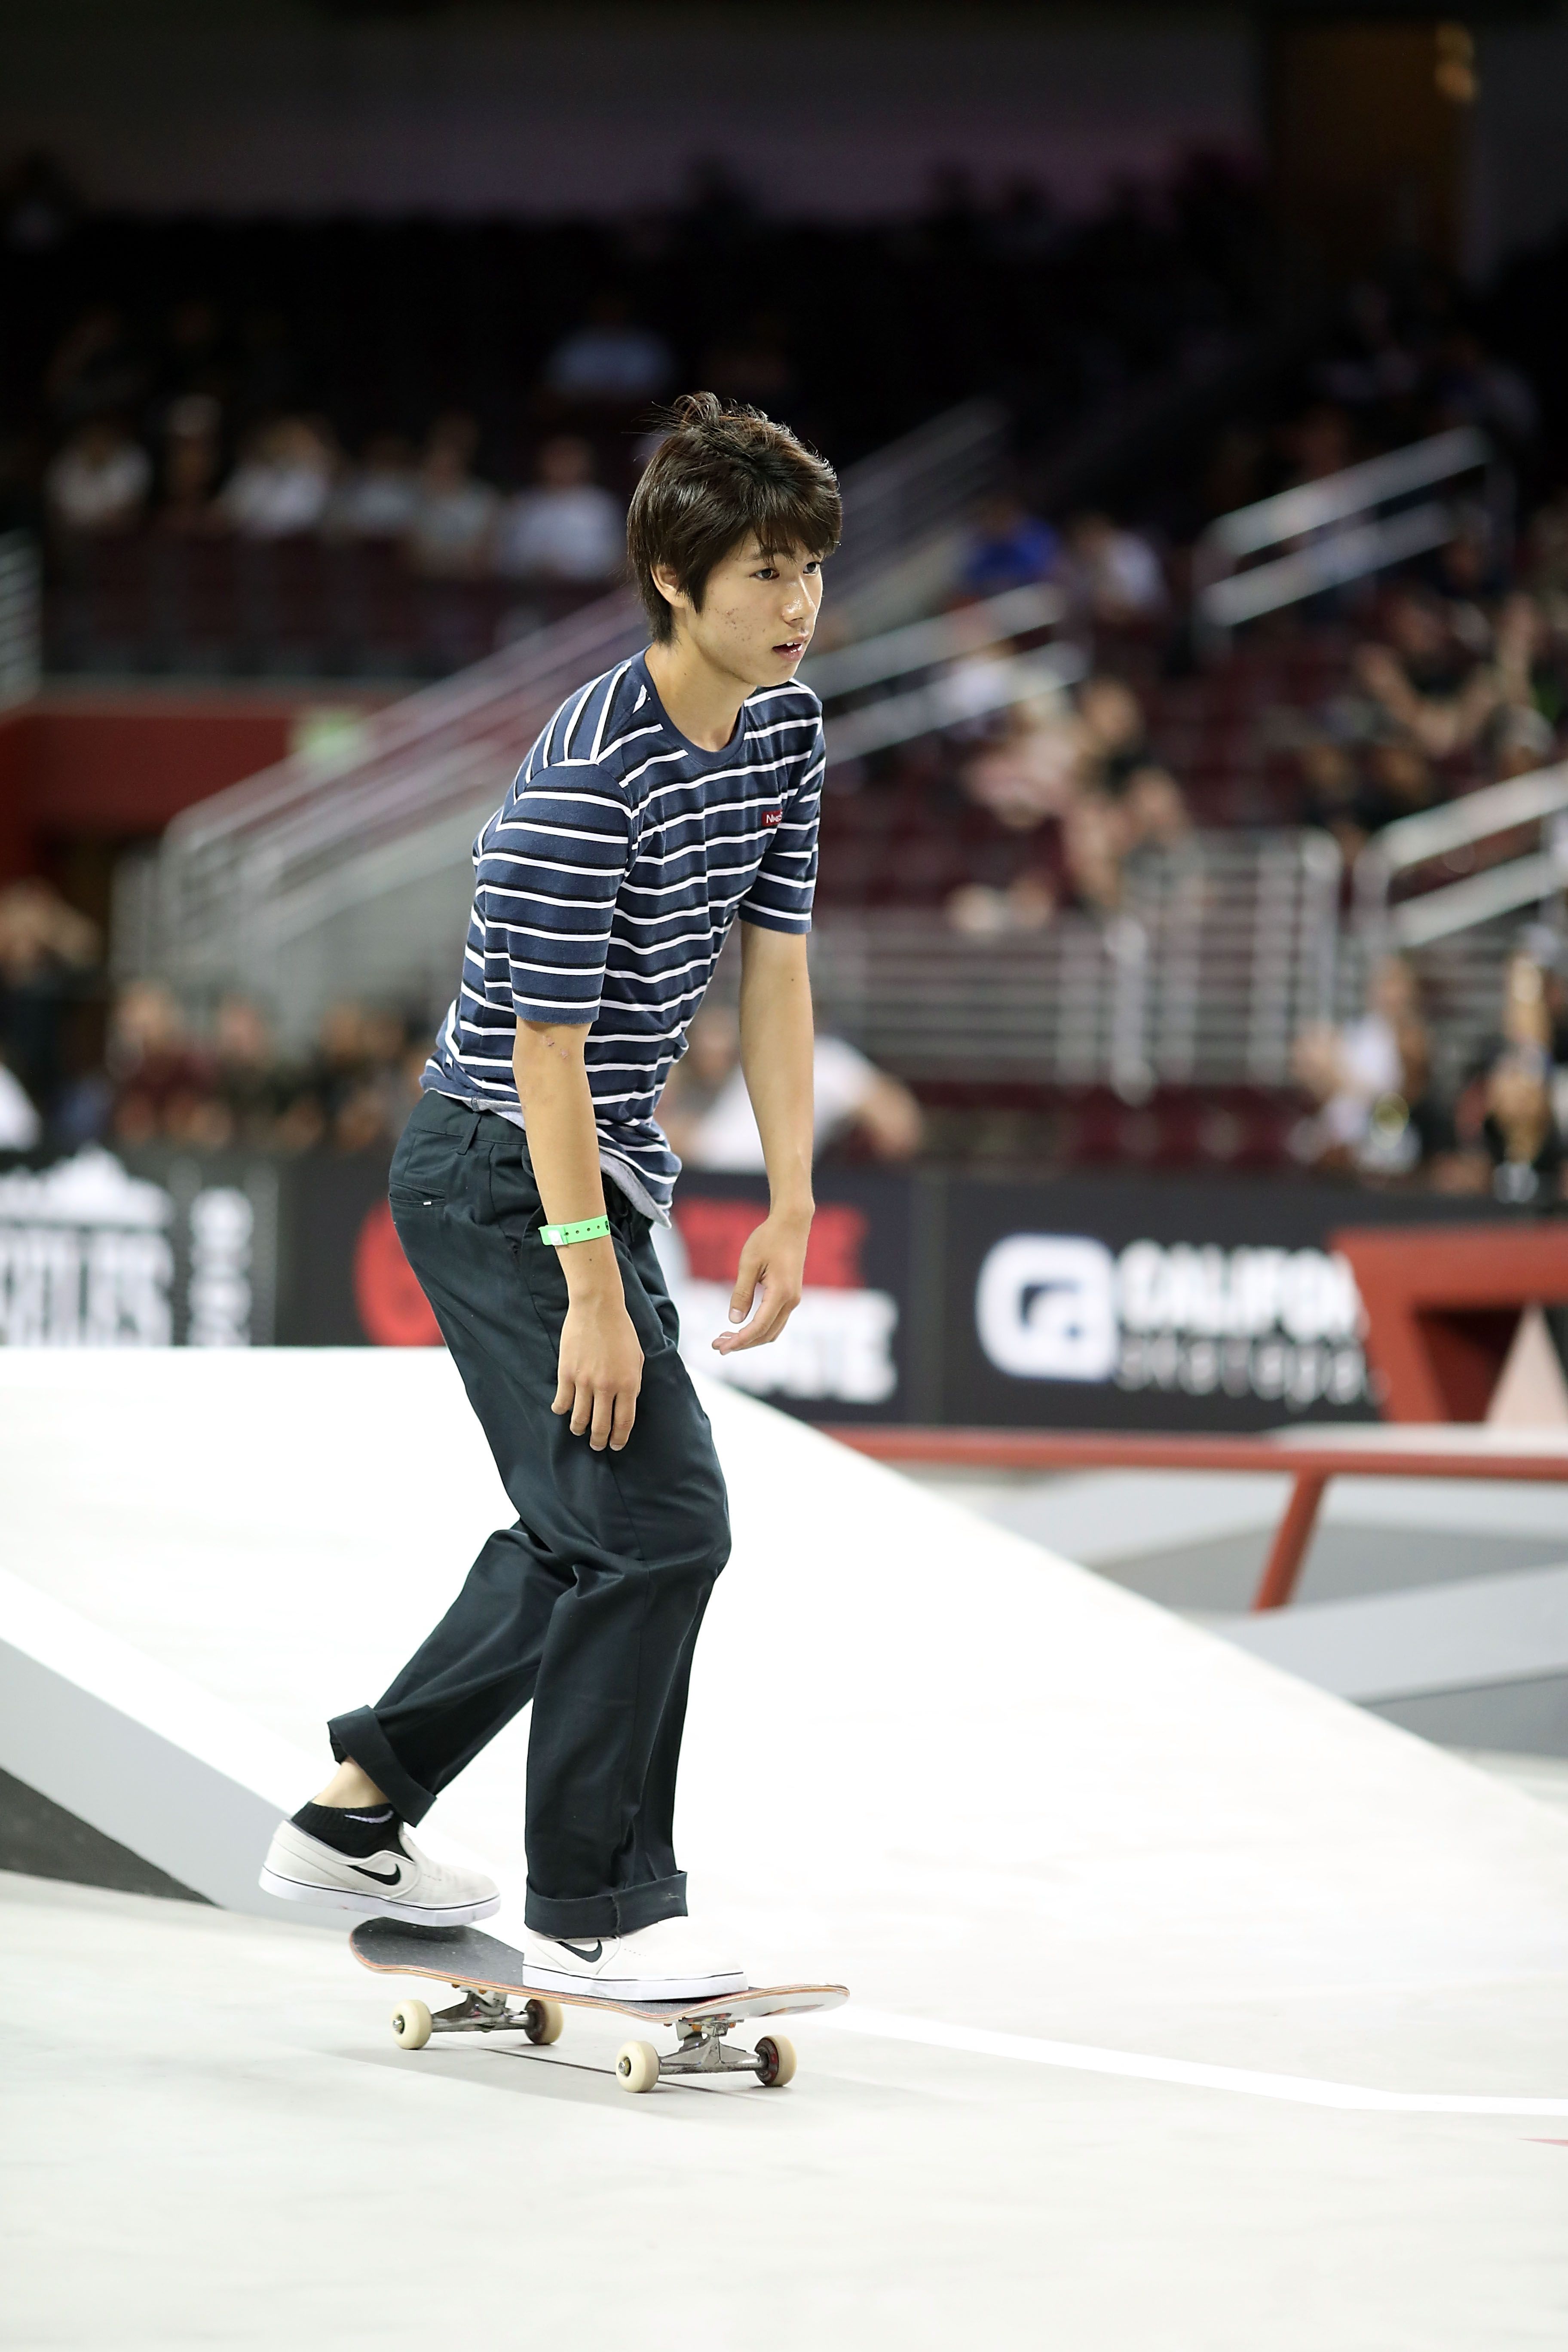 東京オリンピック開催記念 新競技 スケートボード にまつわるギモン